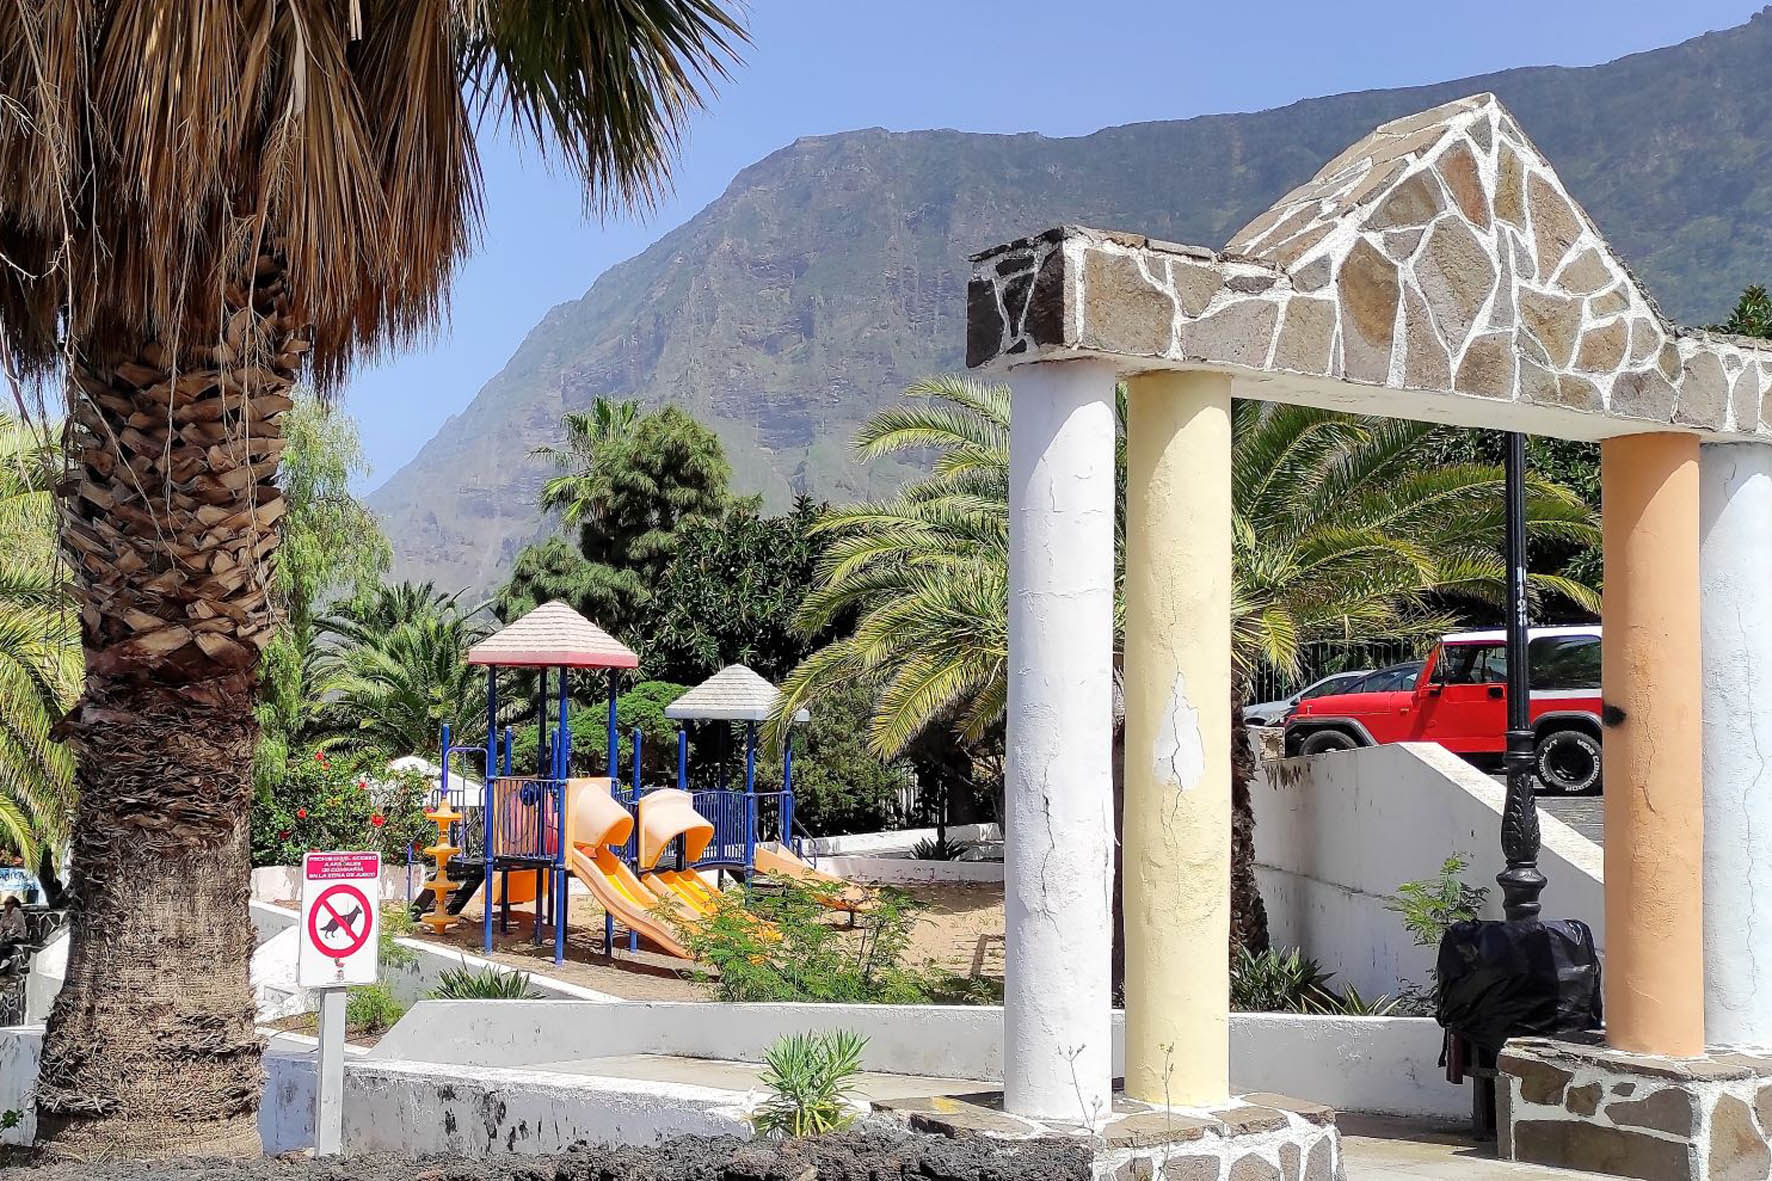 El Ayuntamiento adjudica las obras del parque infantil exterior de la casa consistorial de La Frontera